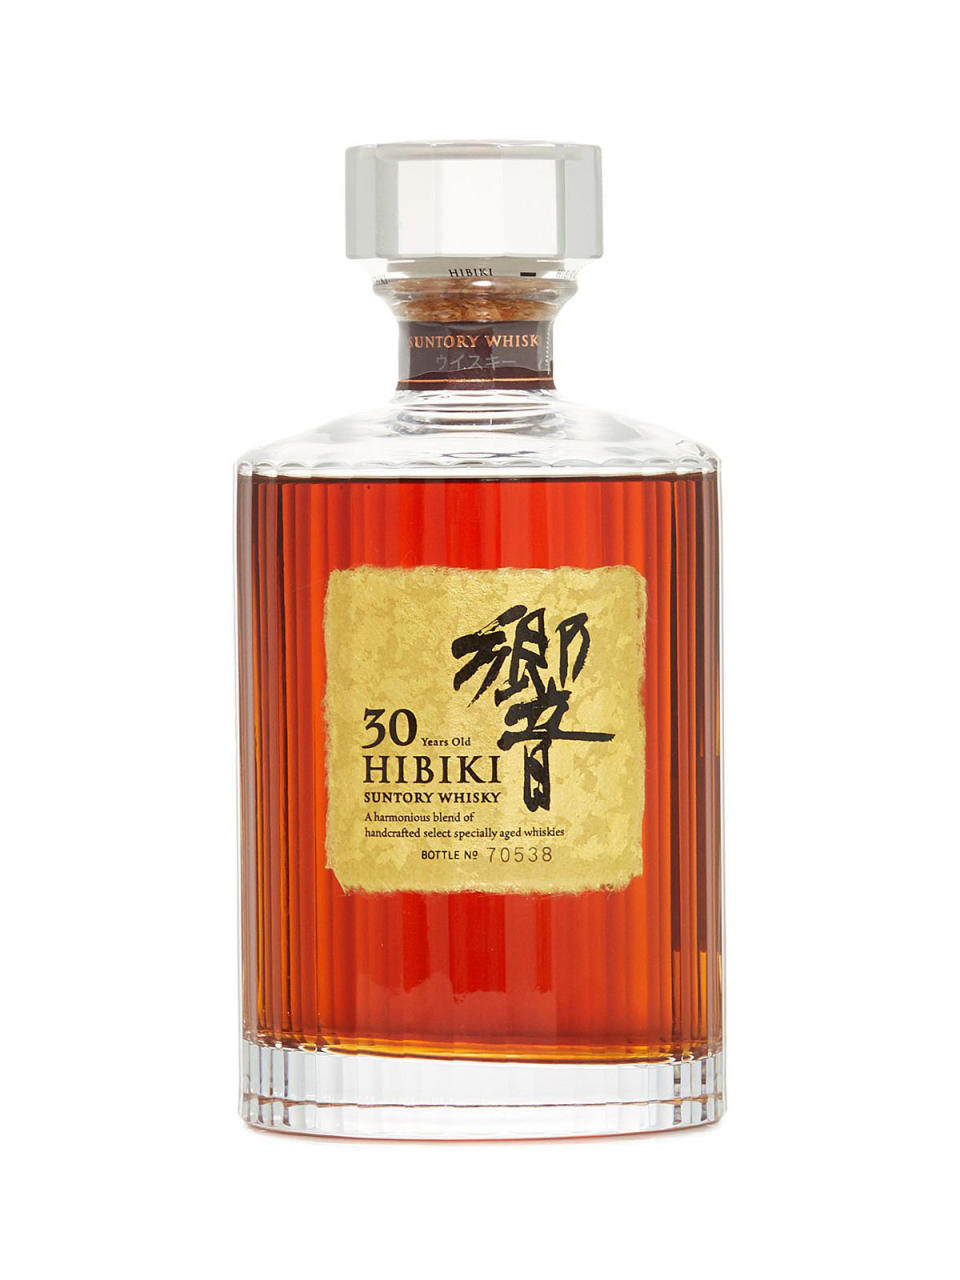 【日本威士忌】響Hibiki威士忌介紹：核心作品價錢/日本和諧風味代表